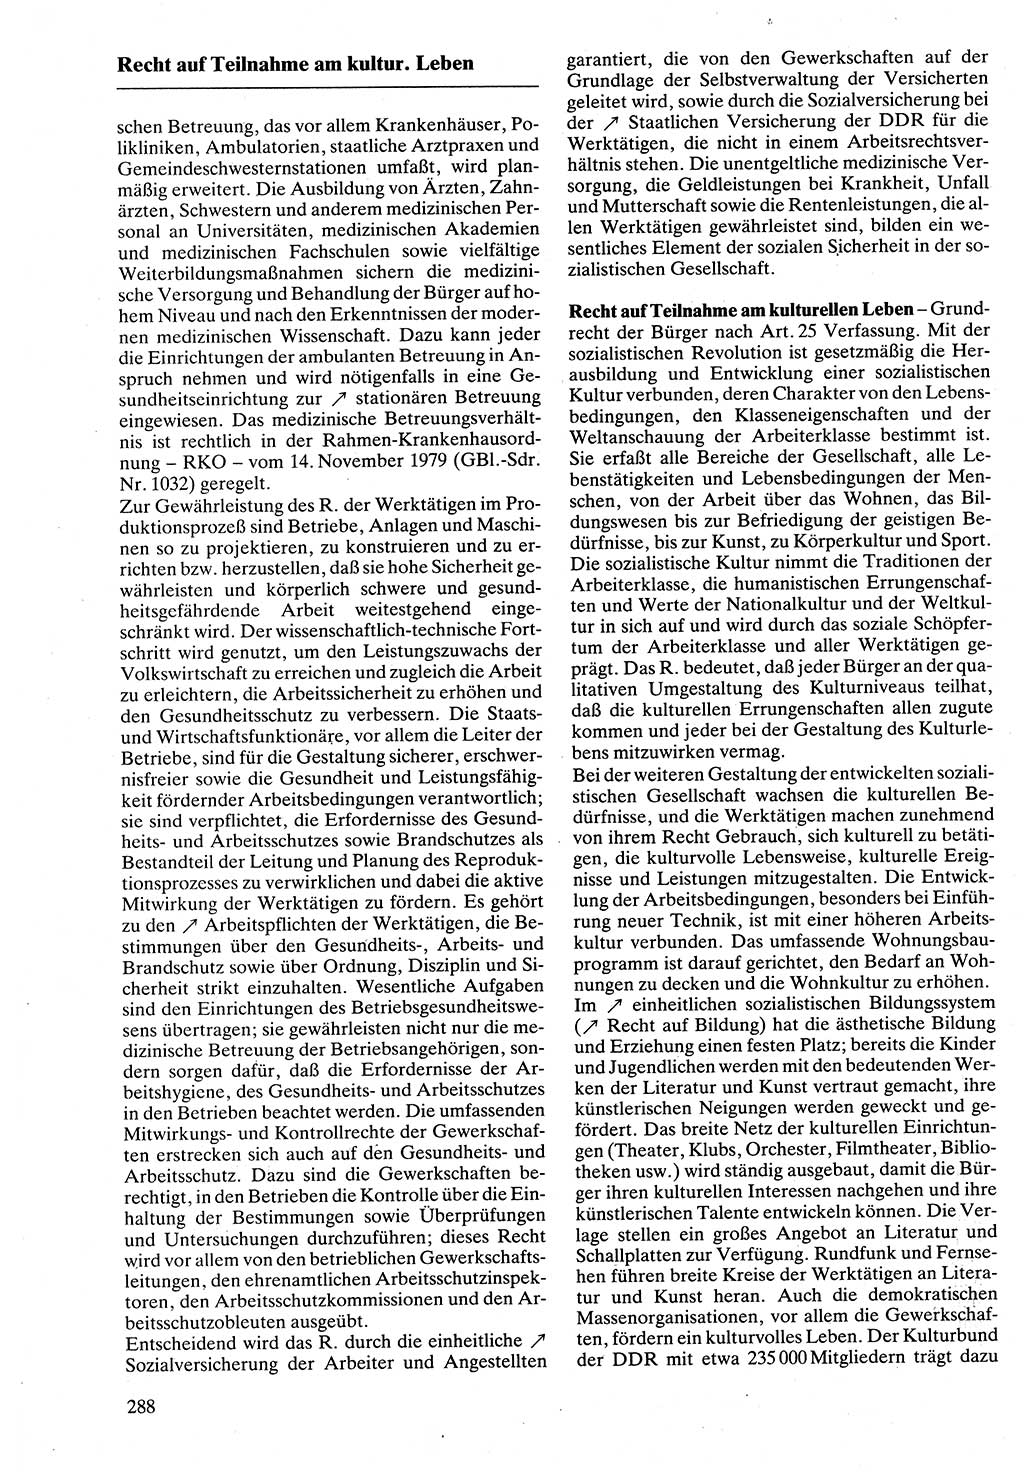 Rechtslexikon [Deutsche Demokratische Republik (DDR)] 1988, Seite 288 (Rechtslex. DDR 1988, S. 288)